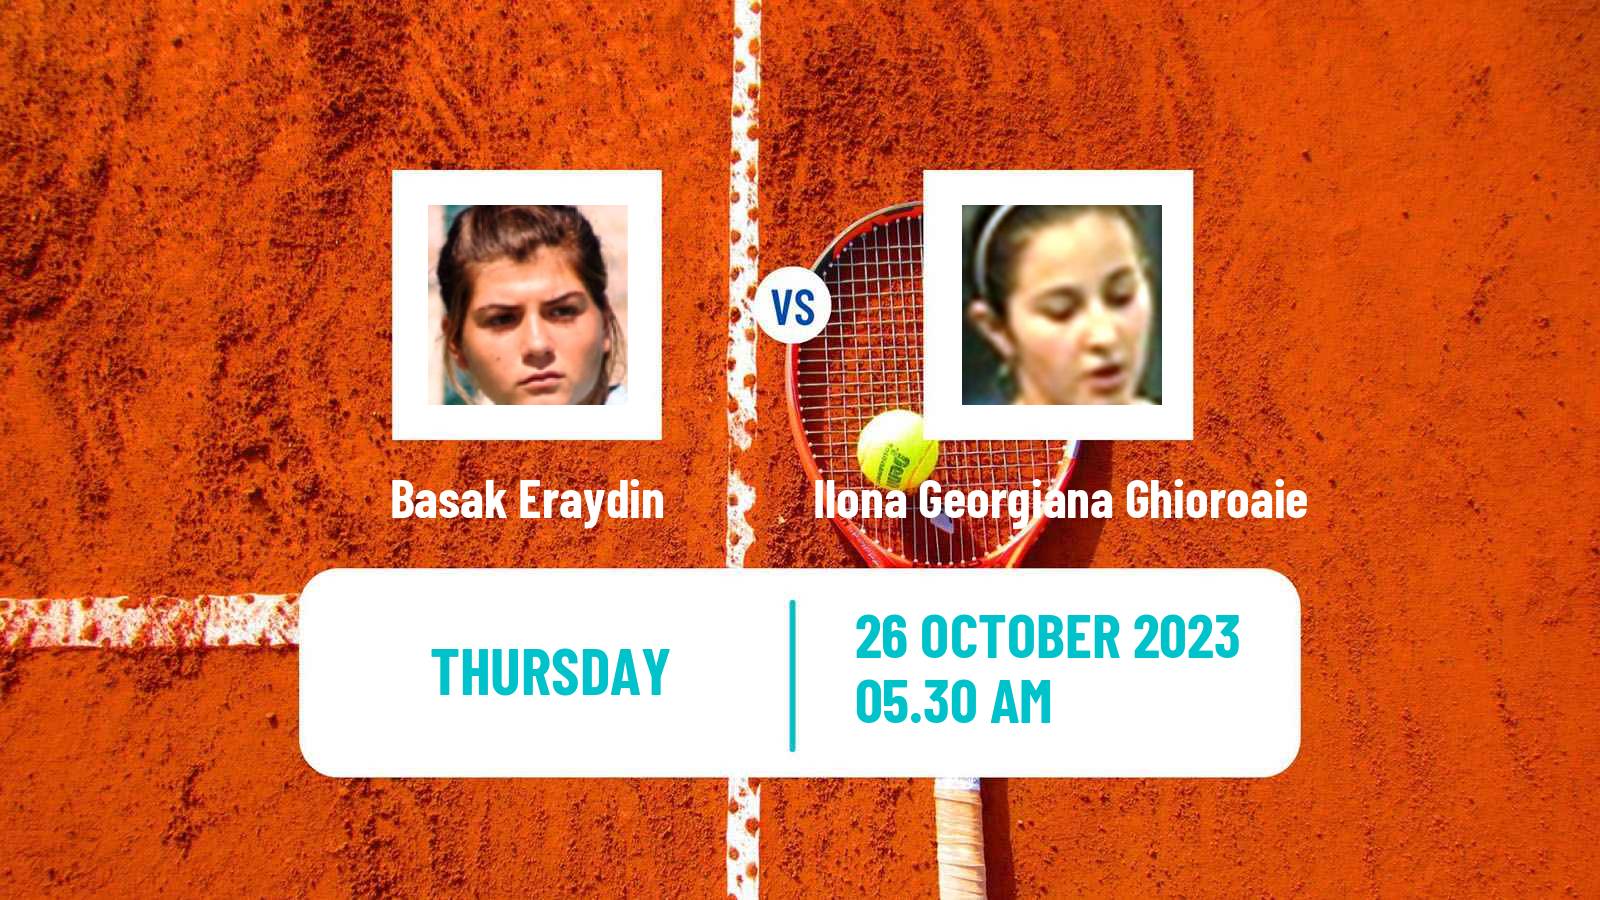 Tennis ITF W25 Istanbul Women Basak Eraydin - Ilona Georgiana Ghioroaie